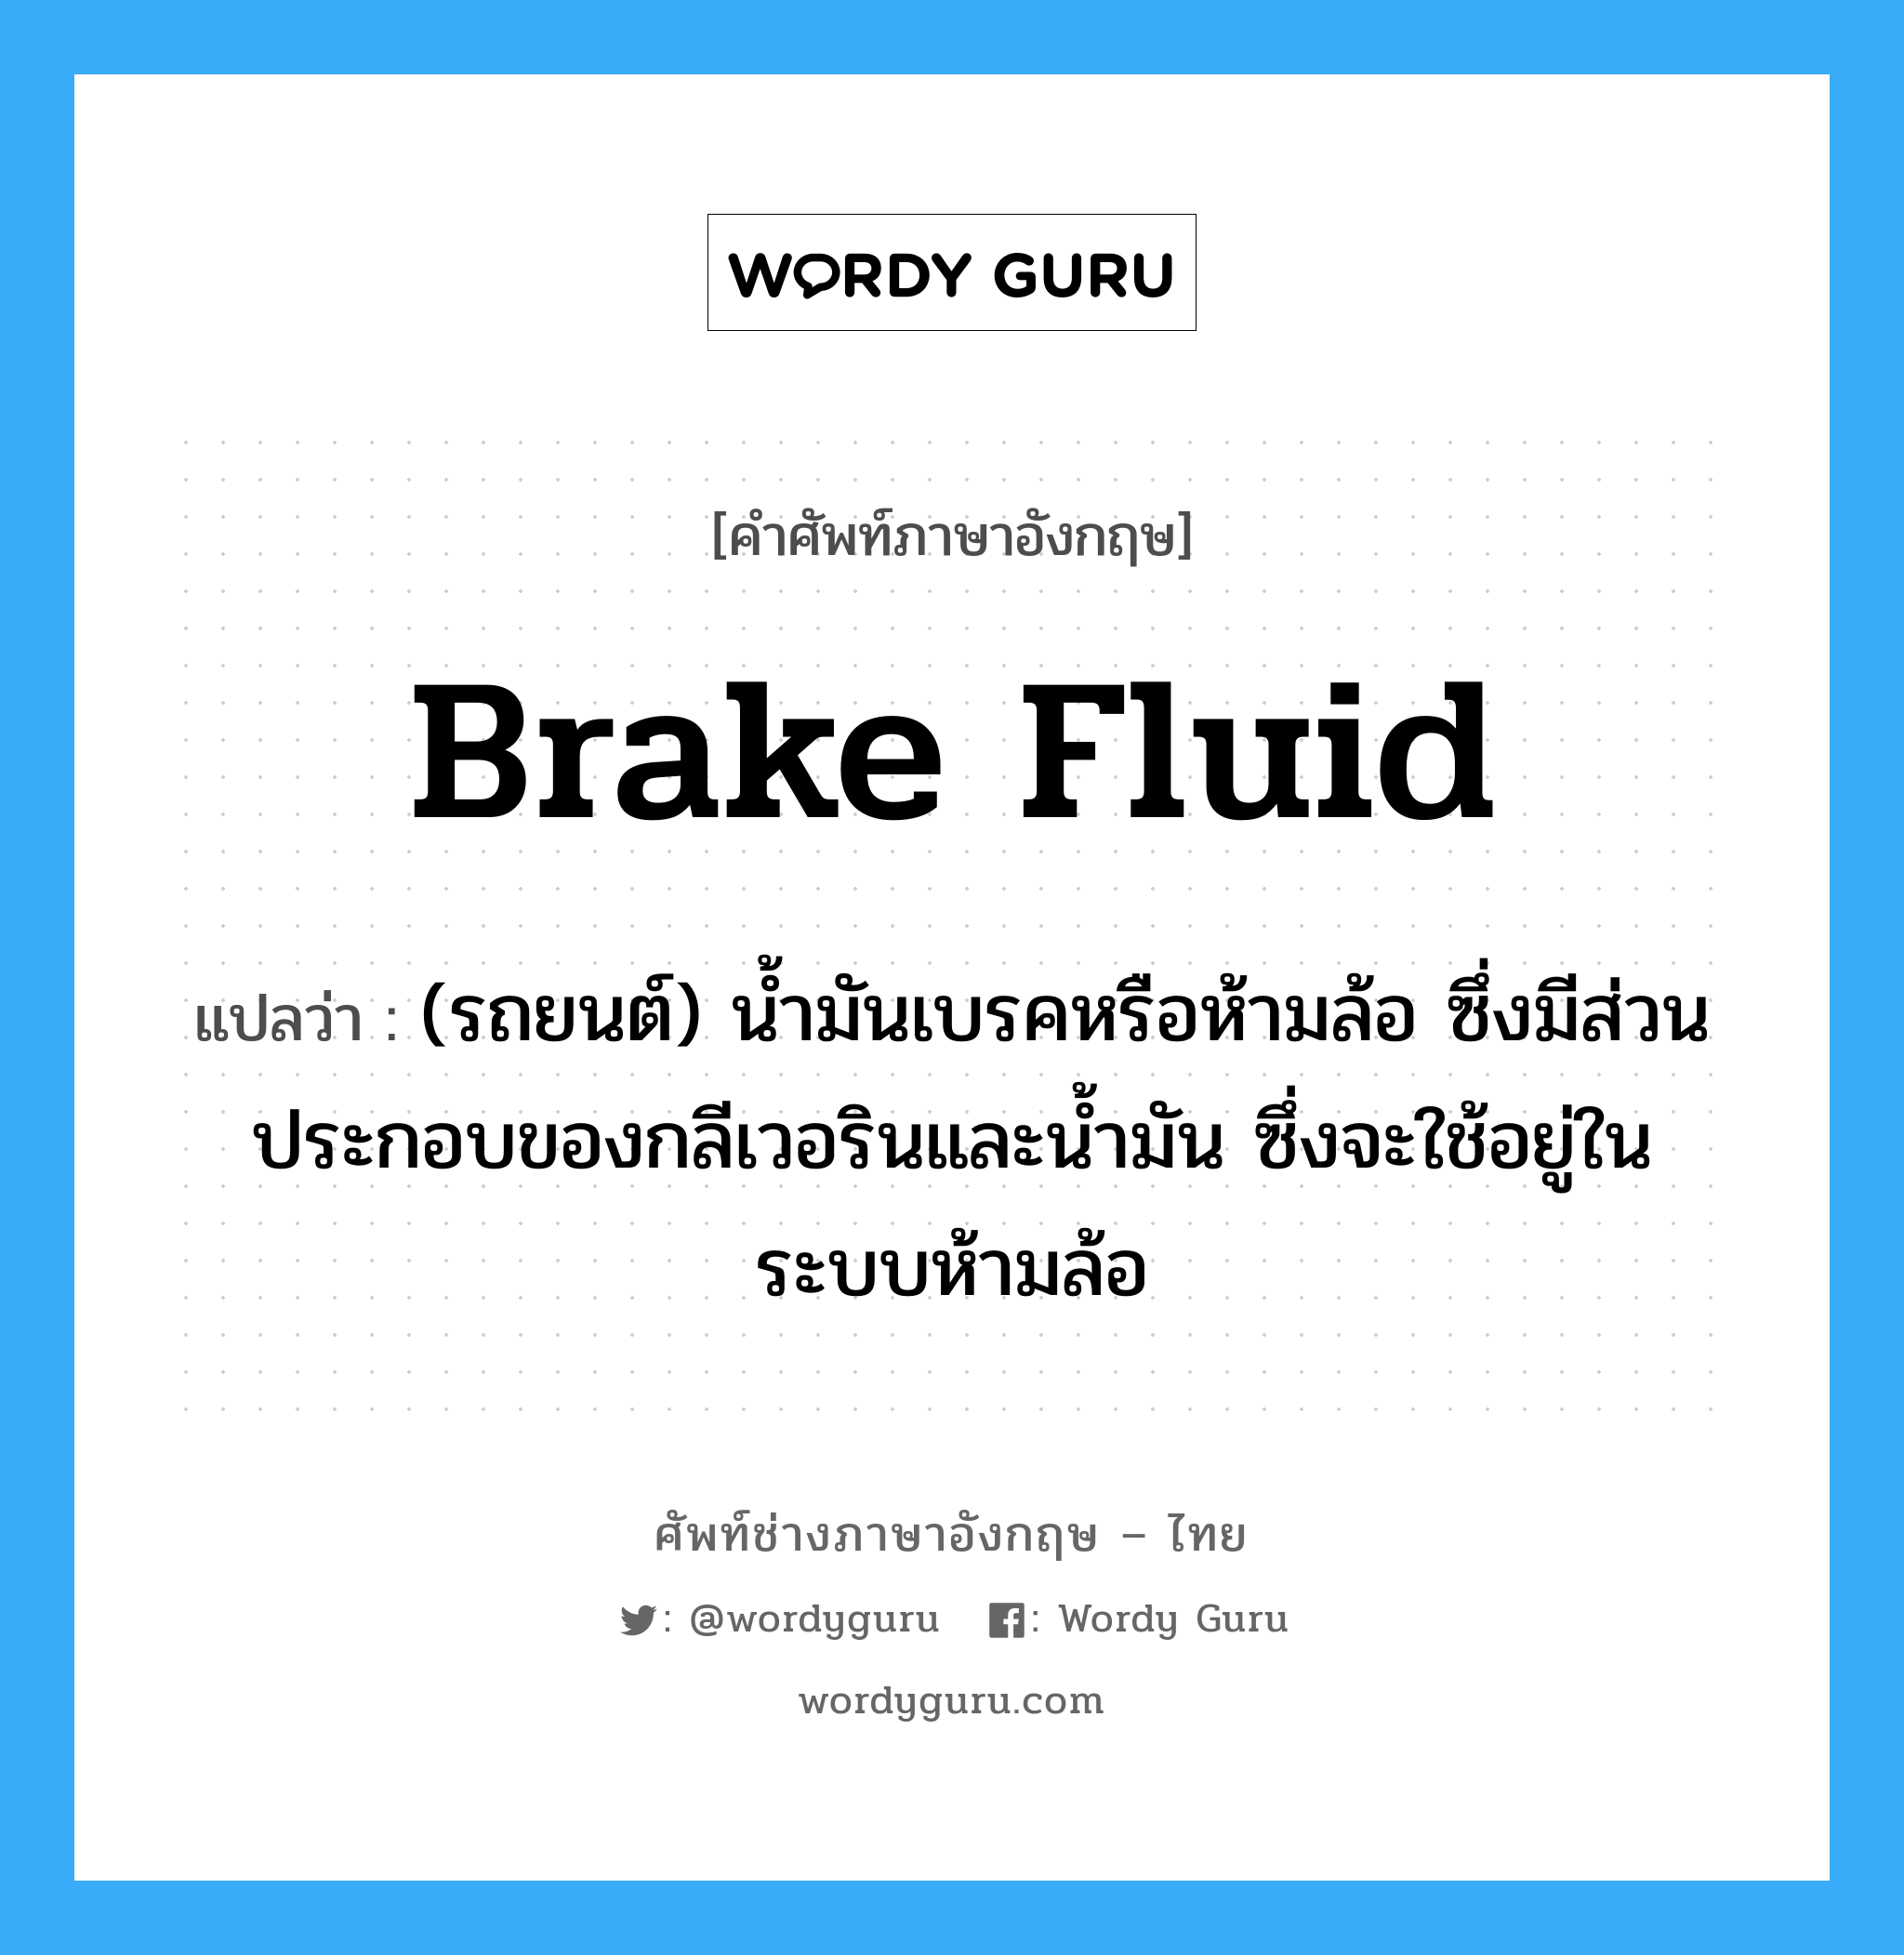 brake fluid แปลว่า?, คำศัพท์ช่างภาษาอังกฤษ - ไทย brake fluid คำศัพท์ภาษาอังกฤษ brake fluid แปลว่า (รถยนต์) น้ำมันเบรคหรือห้ามล้อ ซึ่งมีส่วนประกอบของกลีเวอรินและน้ำมัน ซึ่งจะใช้อยู่ในระบบห้ามล้อ